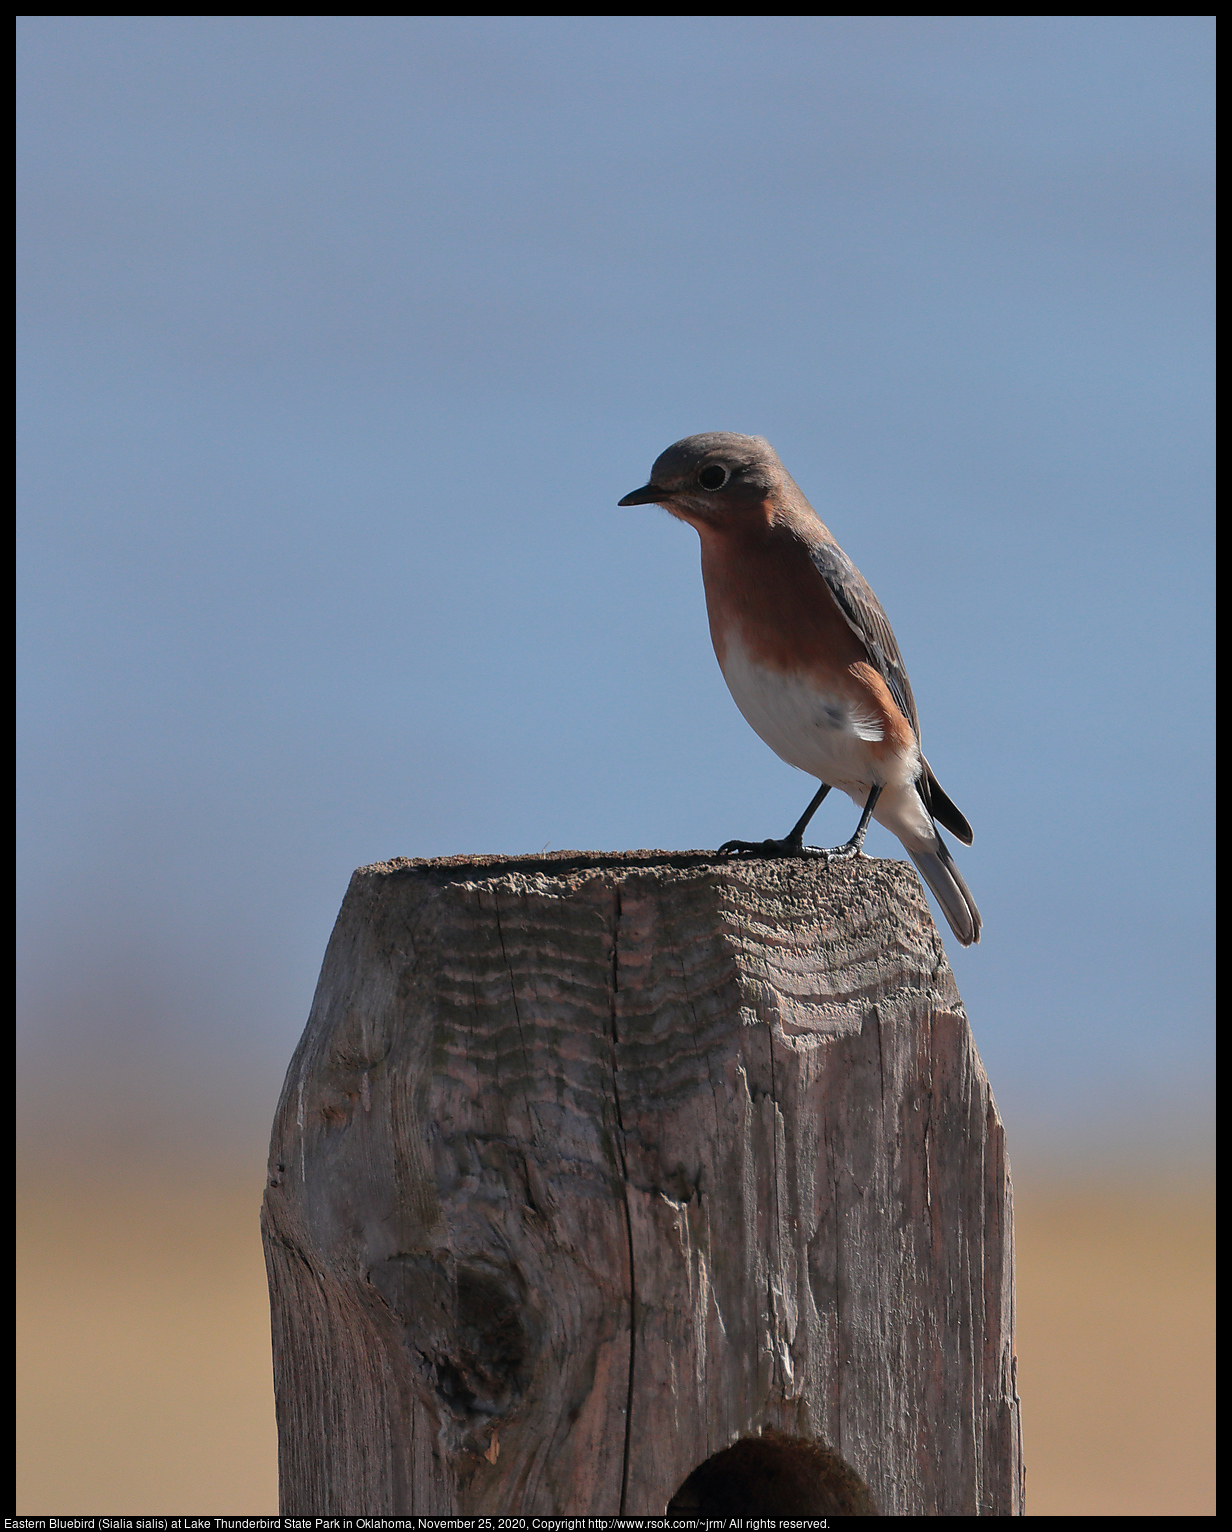 Eastern Bluebird (Sialia sialis) at Lake Thunderbird State Park in Oklahoma, November 25, 2020